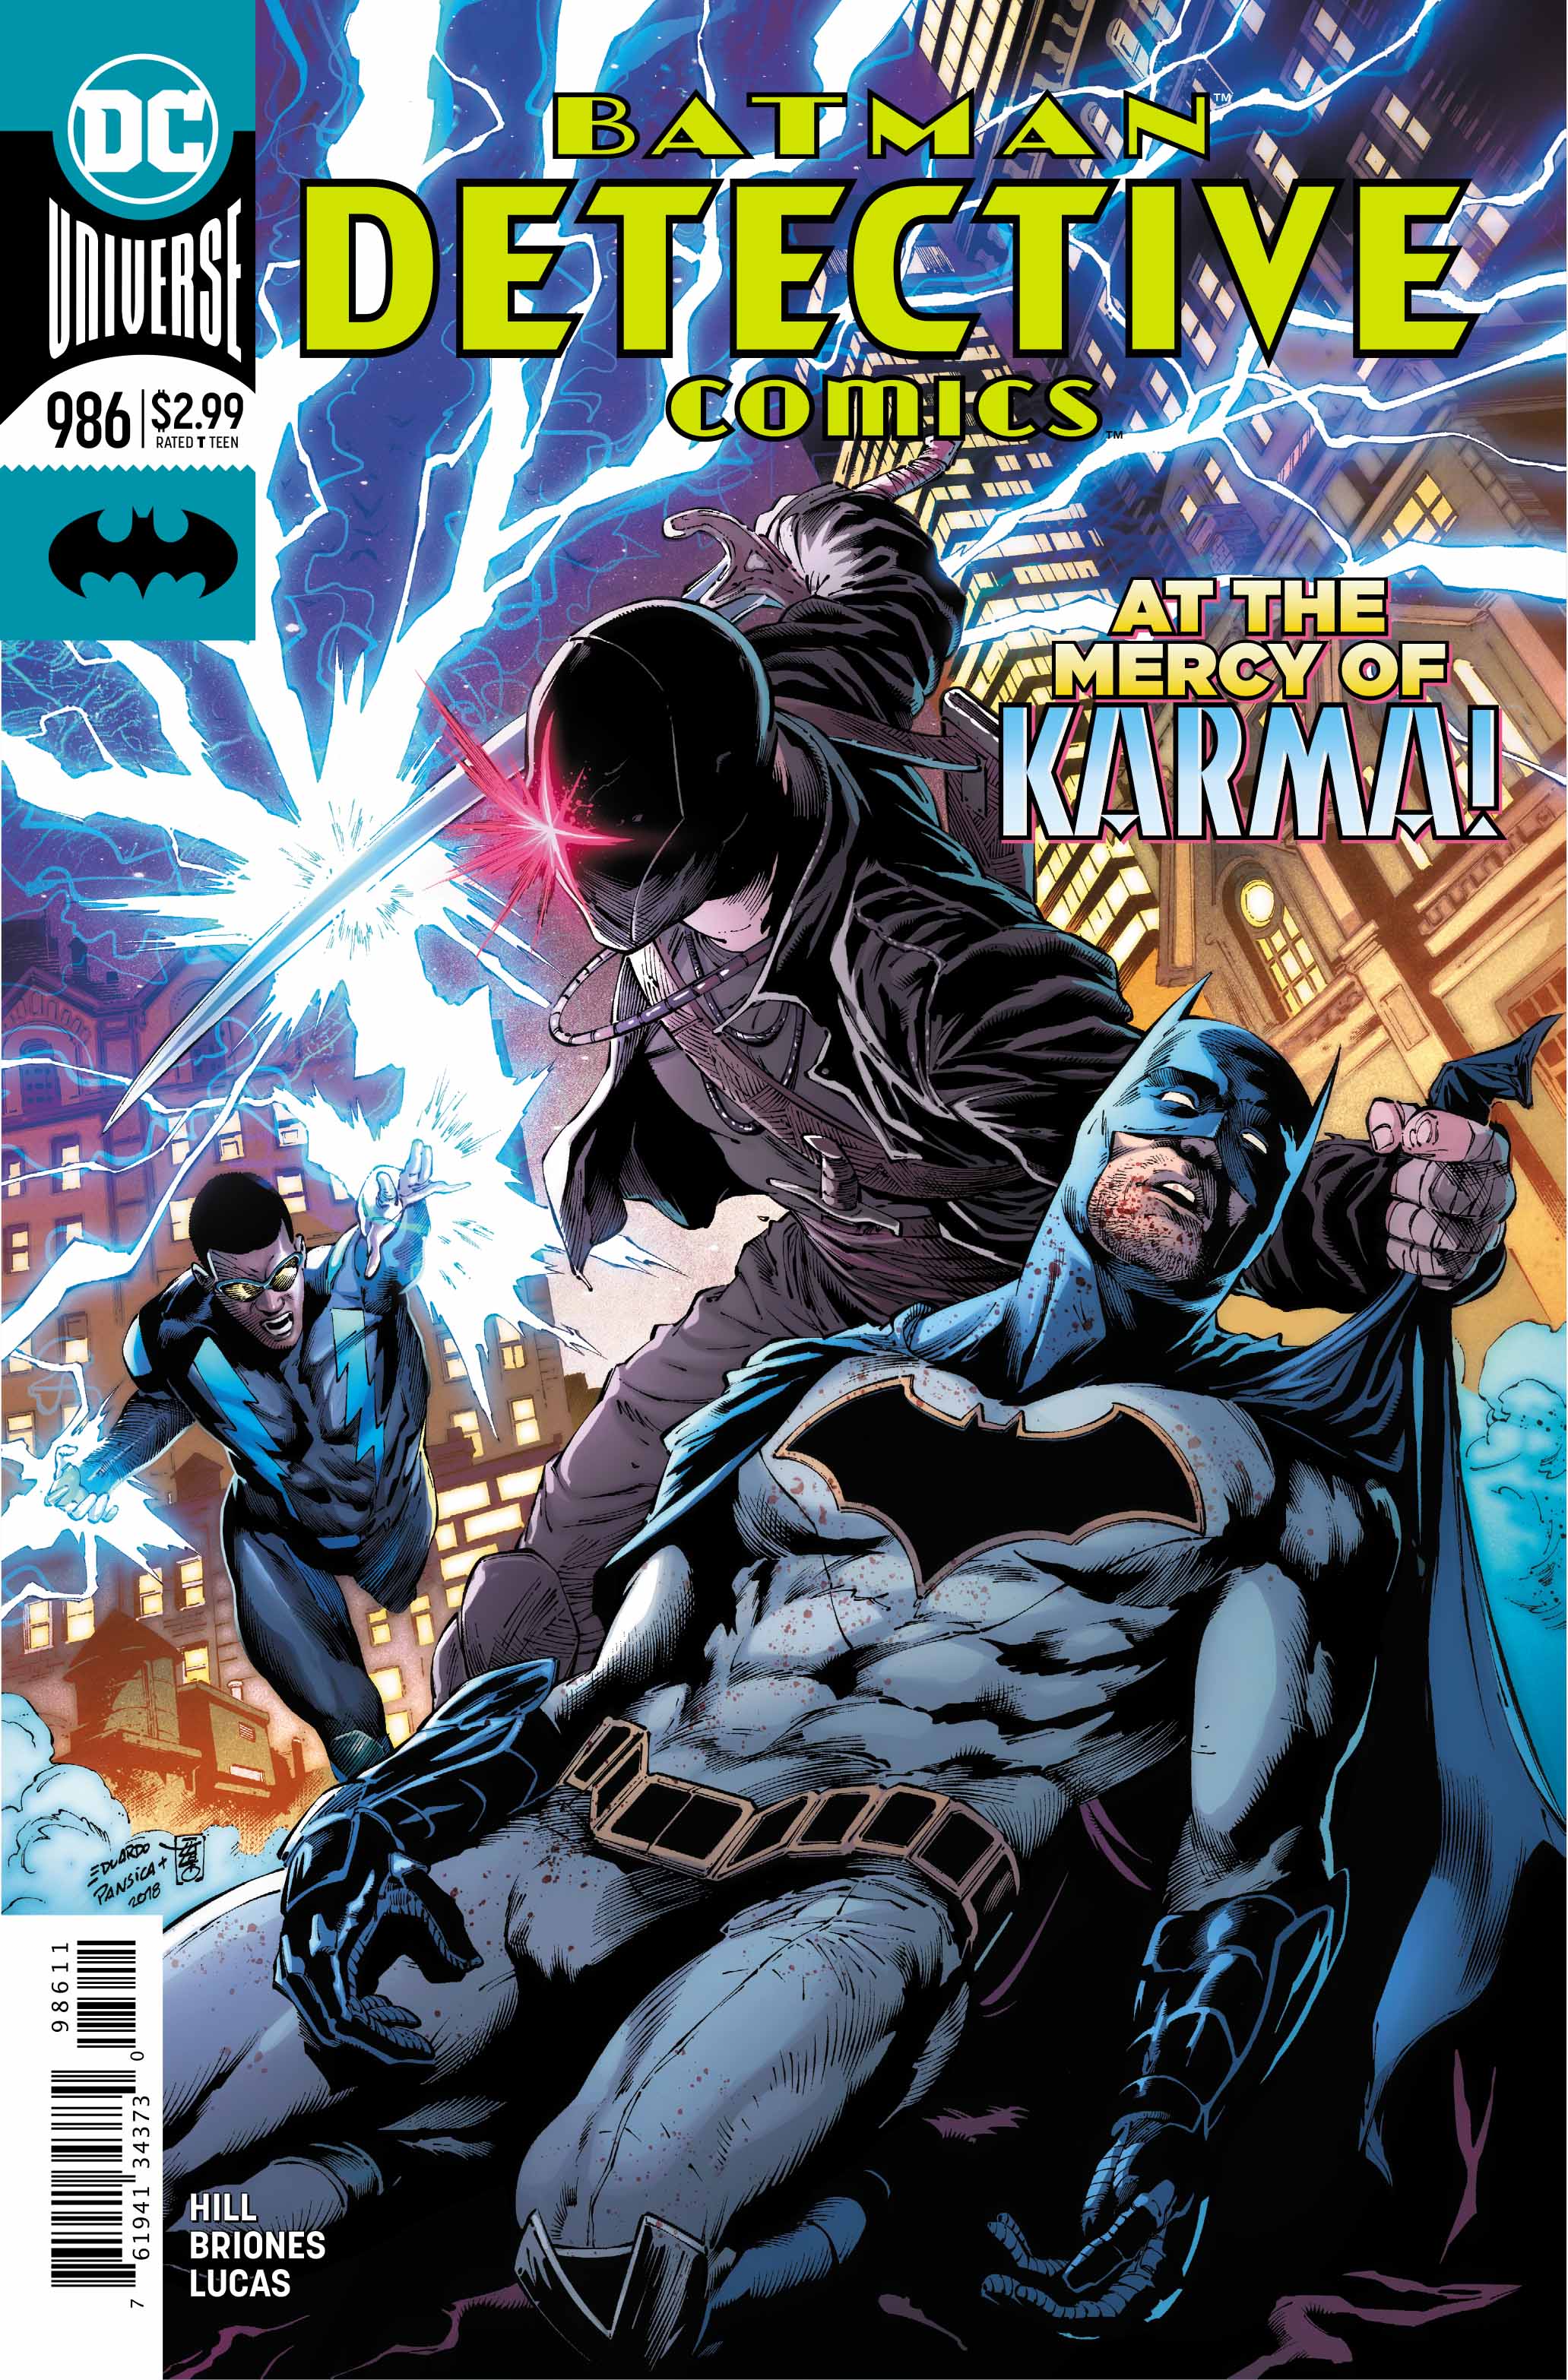 Detective Comics #986 Review